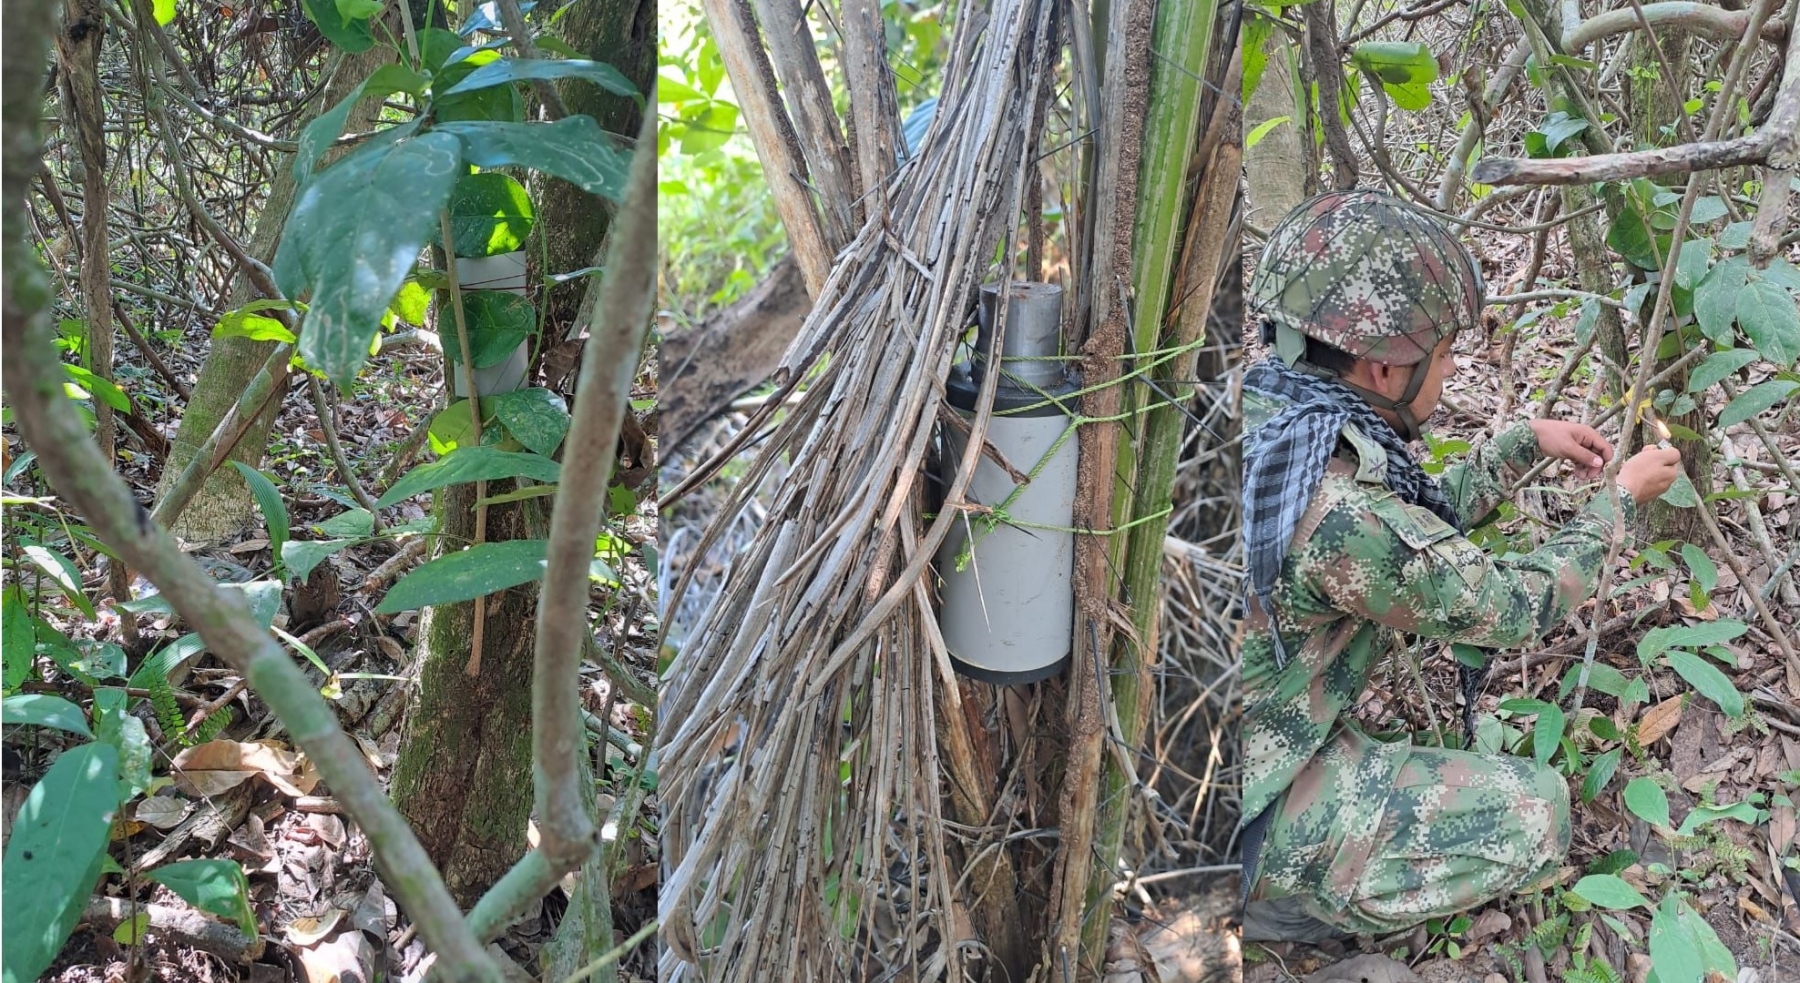 Ejercito Nacional ubica y destruye minas antipersonal en Arauquita